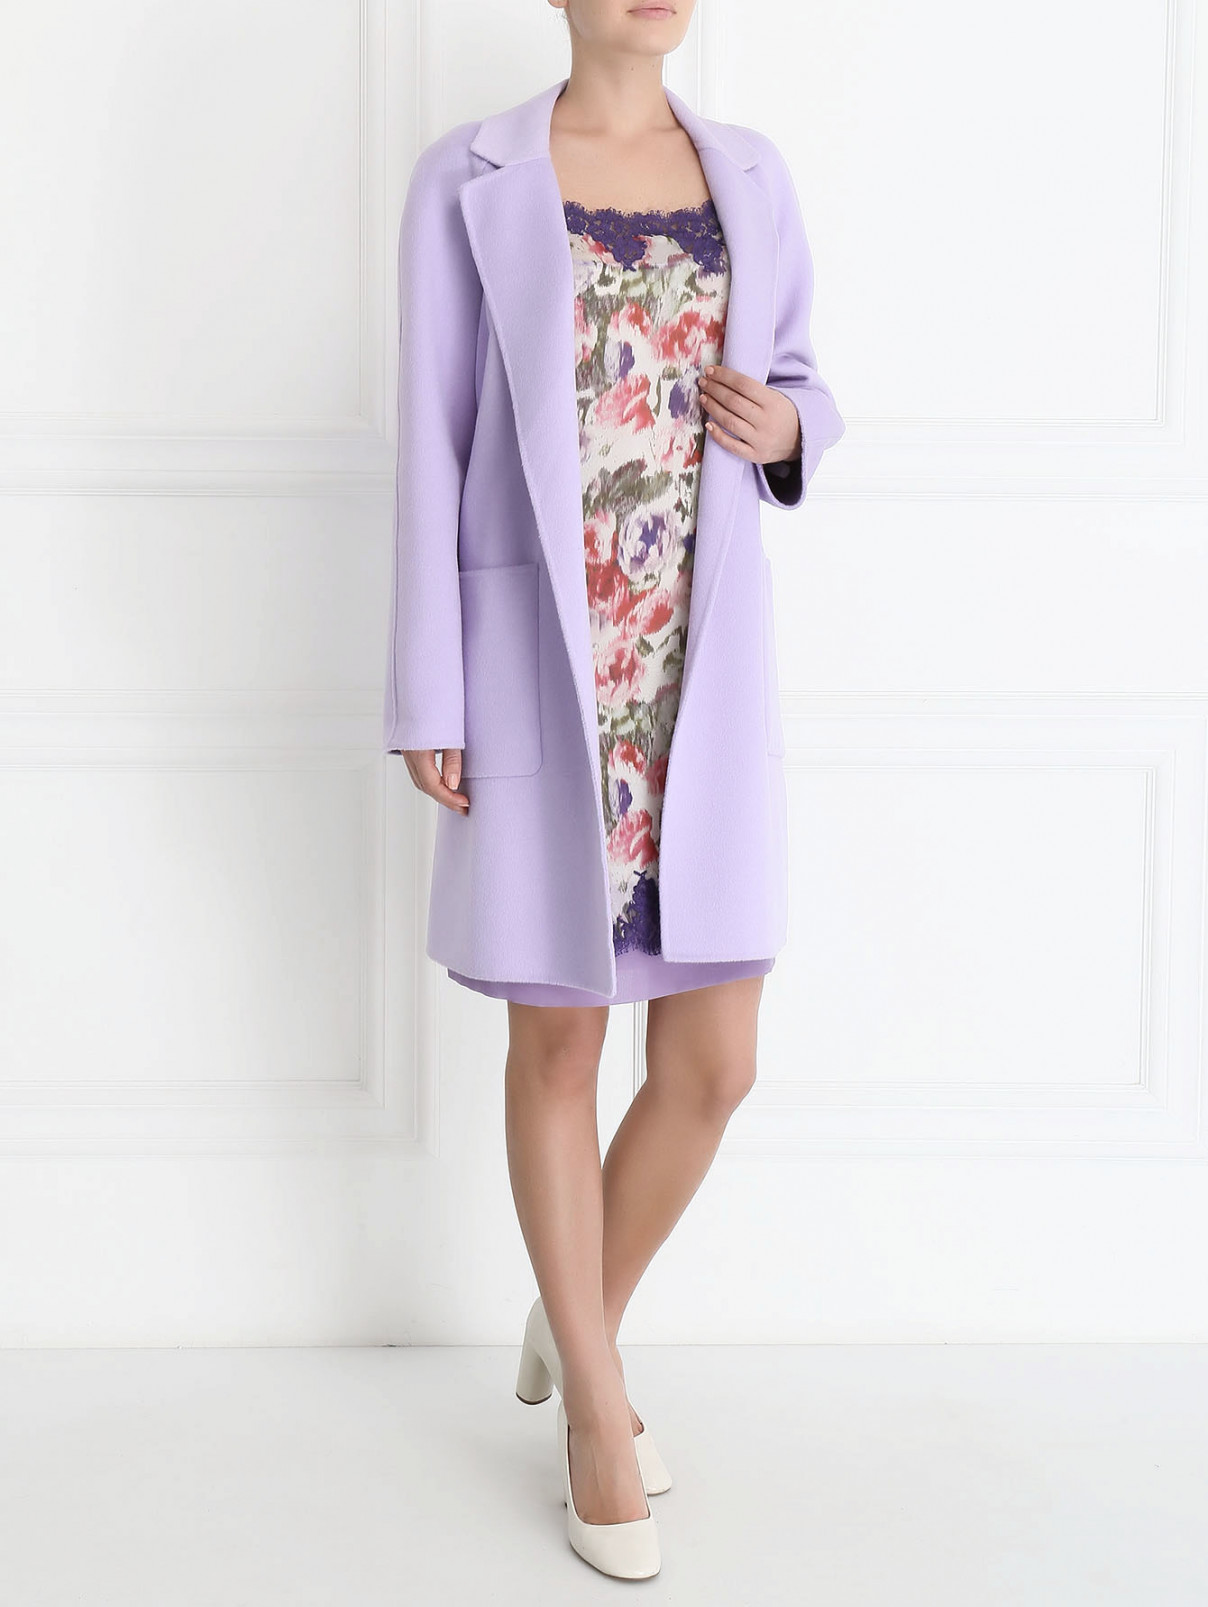 Пальто из шерсти и ангоры с накладными карманами Michael Kors  –  Модель Общий вид  – Цвет:  Фиолетовый